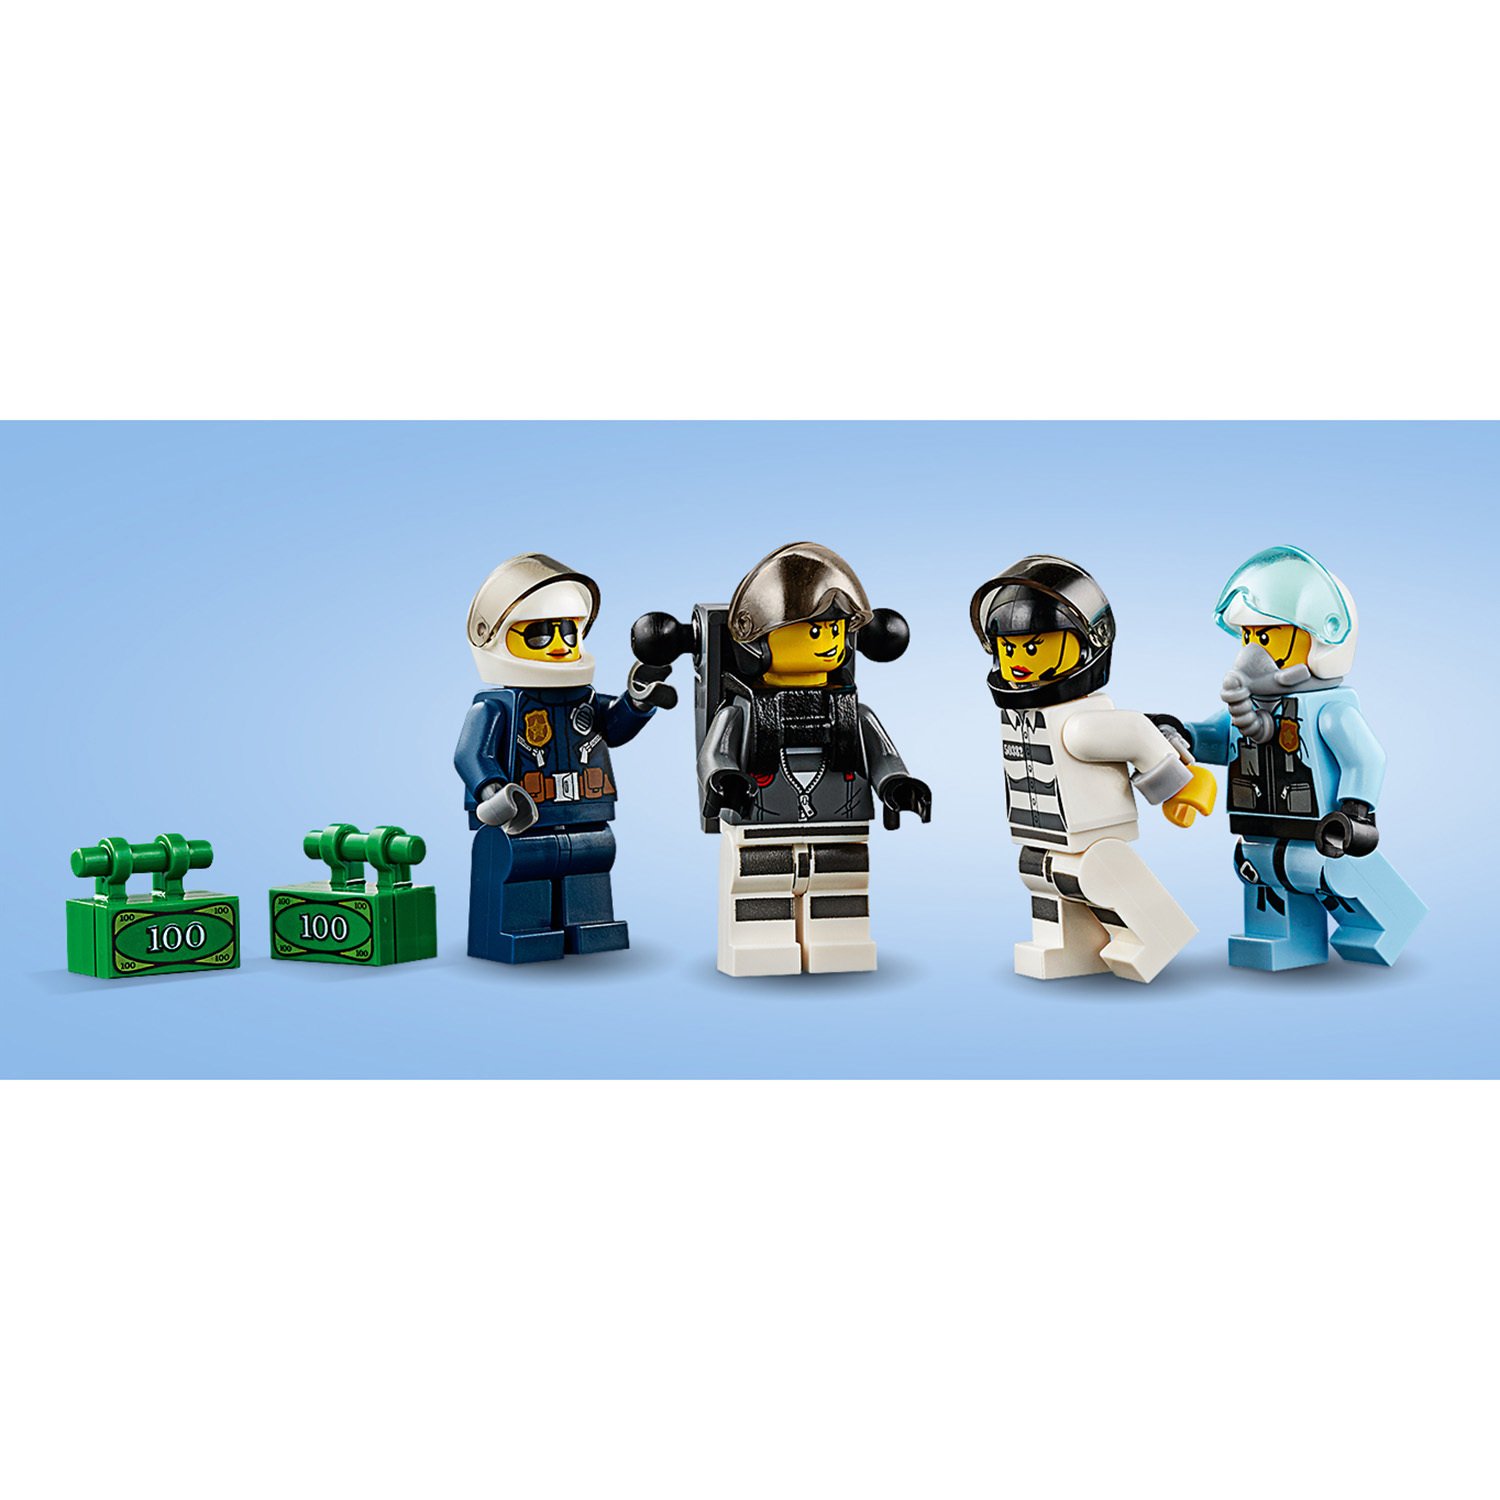 Lego City 60208 Воздушная полиция: Арест парашютиста